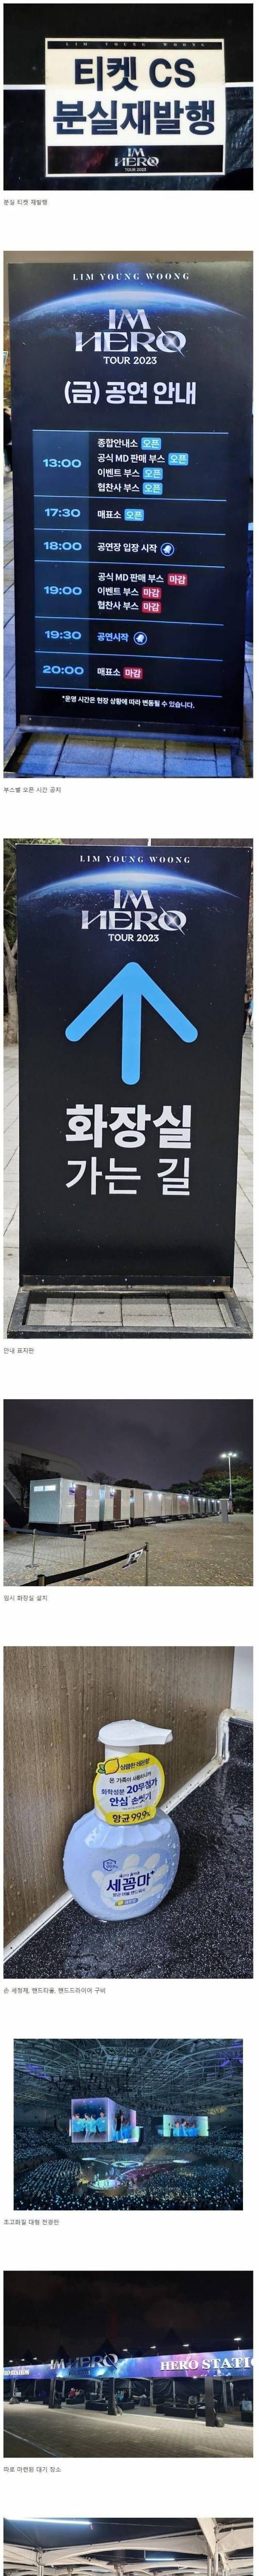 최이삭 K팝 칼럼니스트의 임영웅 콘서트 후기